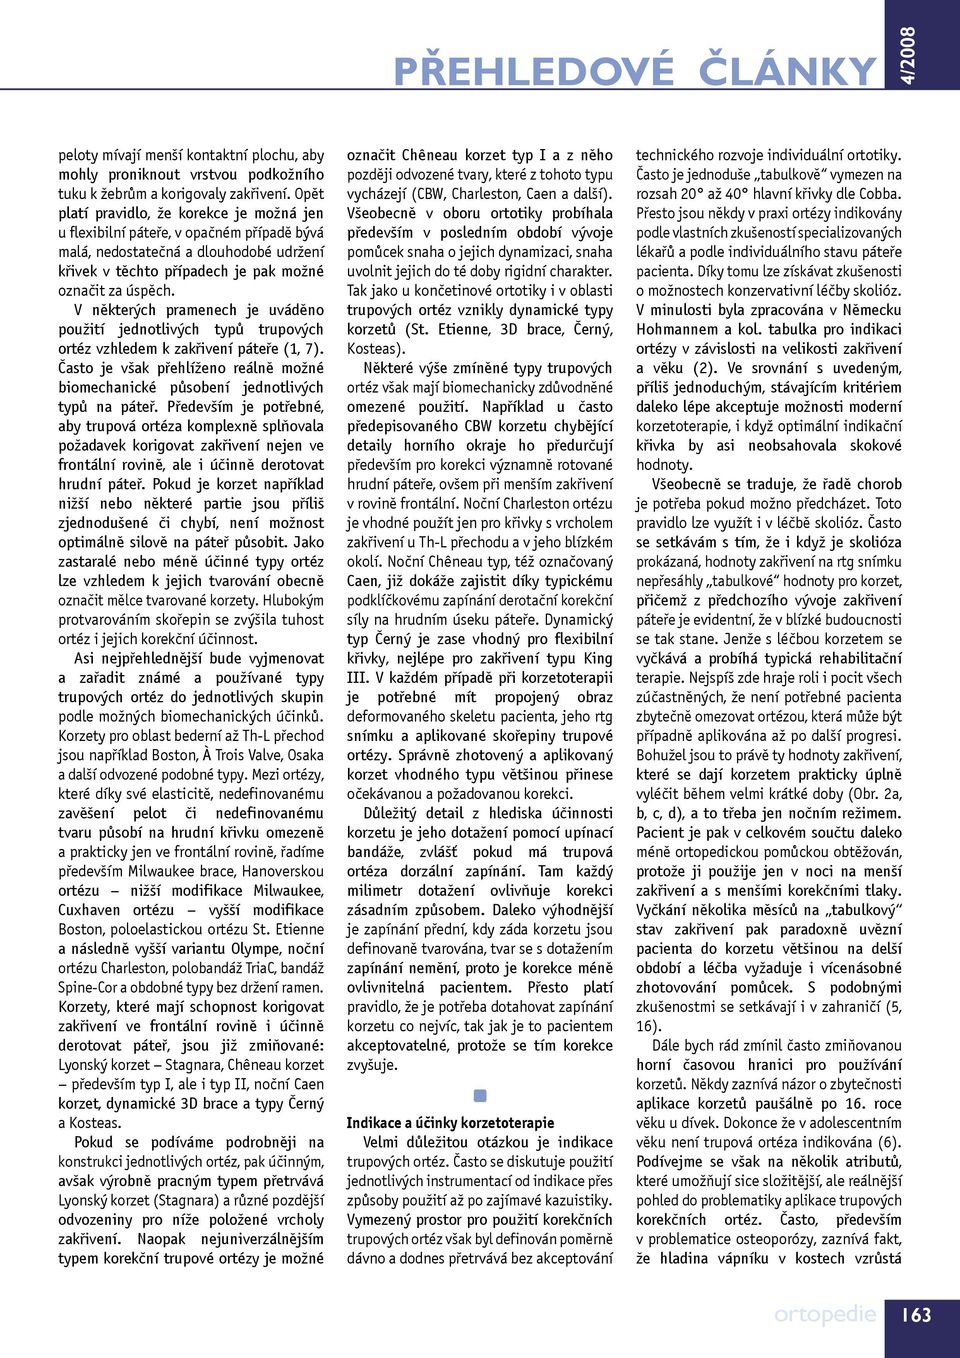 Technické možnosti konzervativní léčby skolióz. Technical possibilities of  conservative treatment of scolioses - PDF Free Download